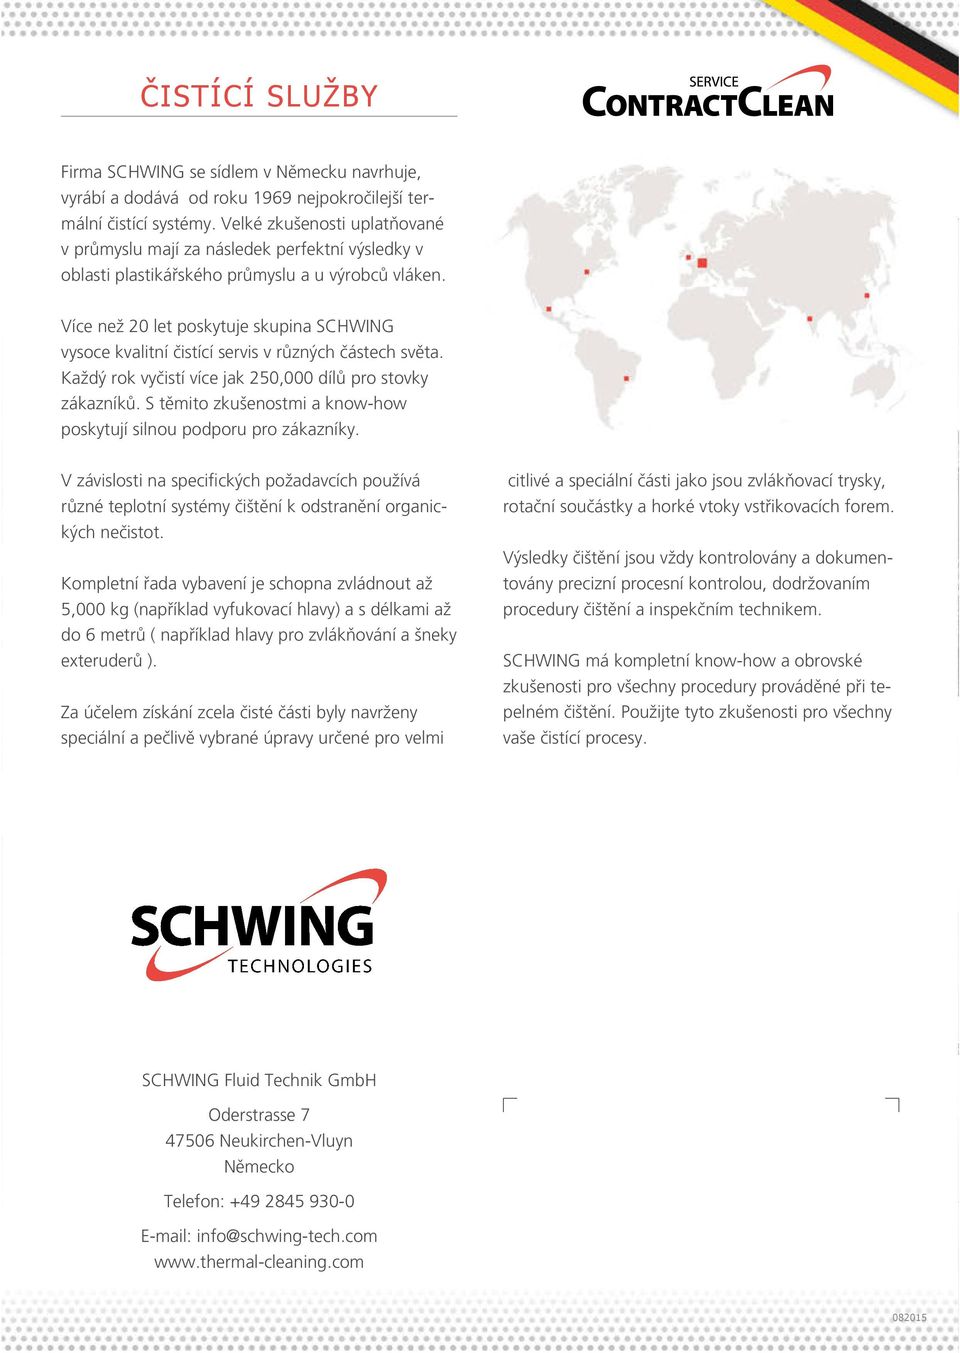 Více než 20 let poskytuje skupina SCHWING vysoce kvalitní čistící servis v různých částech světa. Každý rok vyčistí více jak 250,000 dílů pro stovky zákazníků.